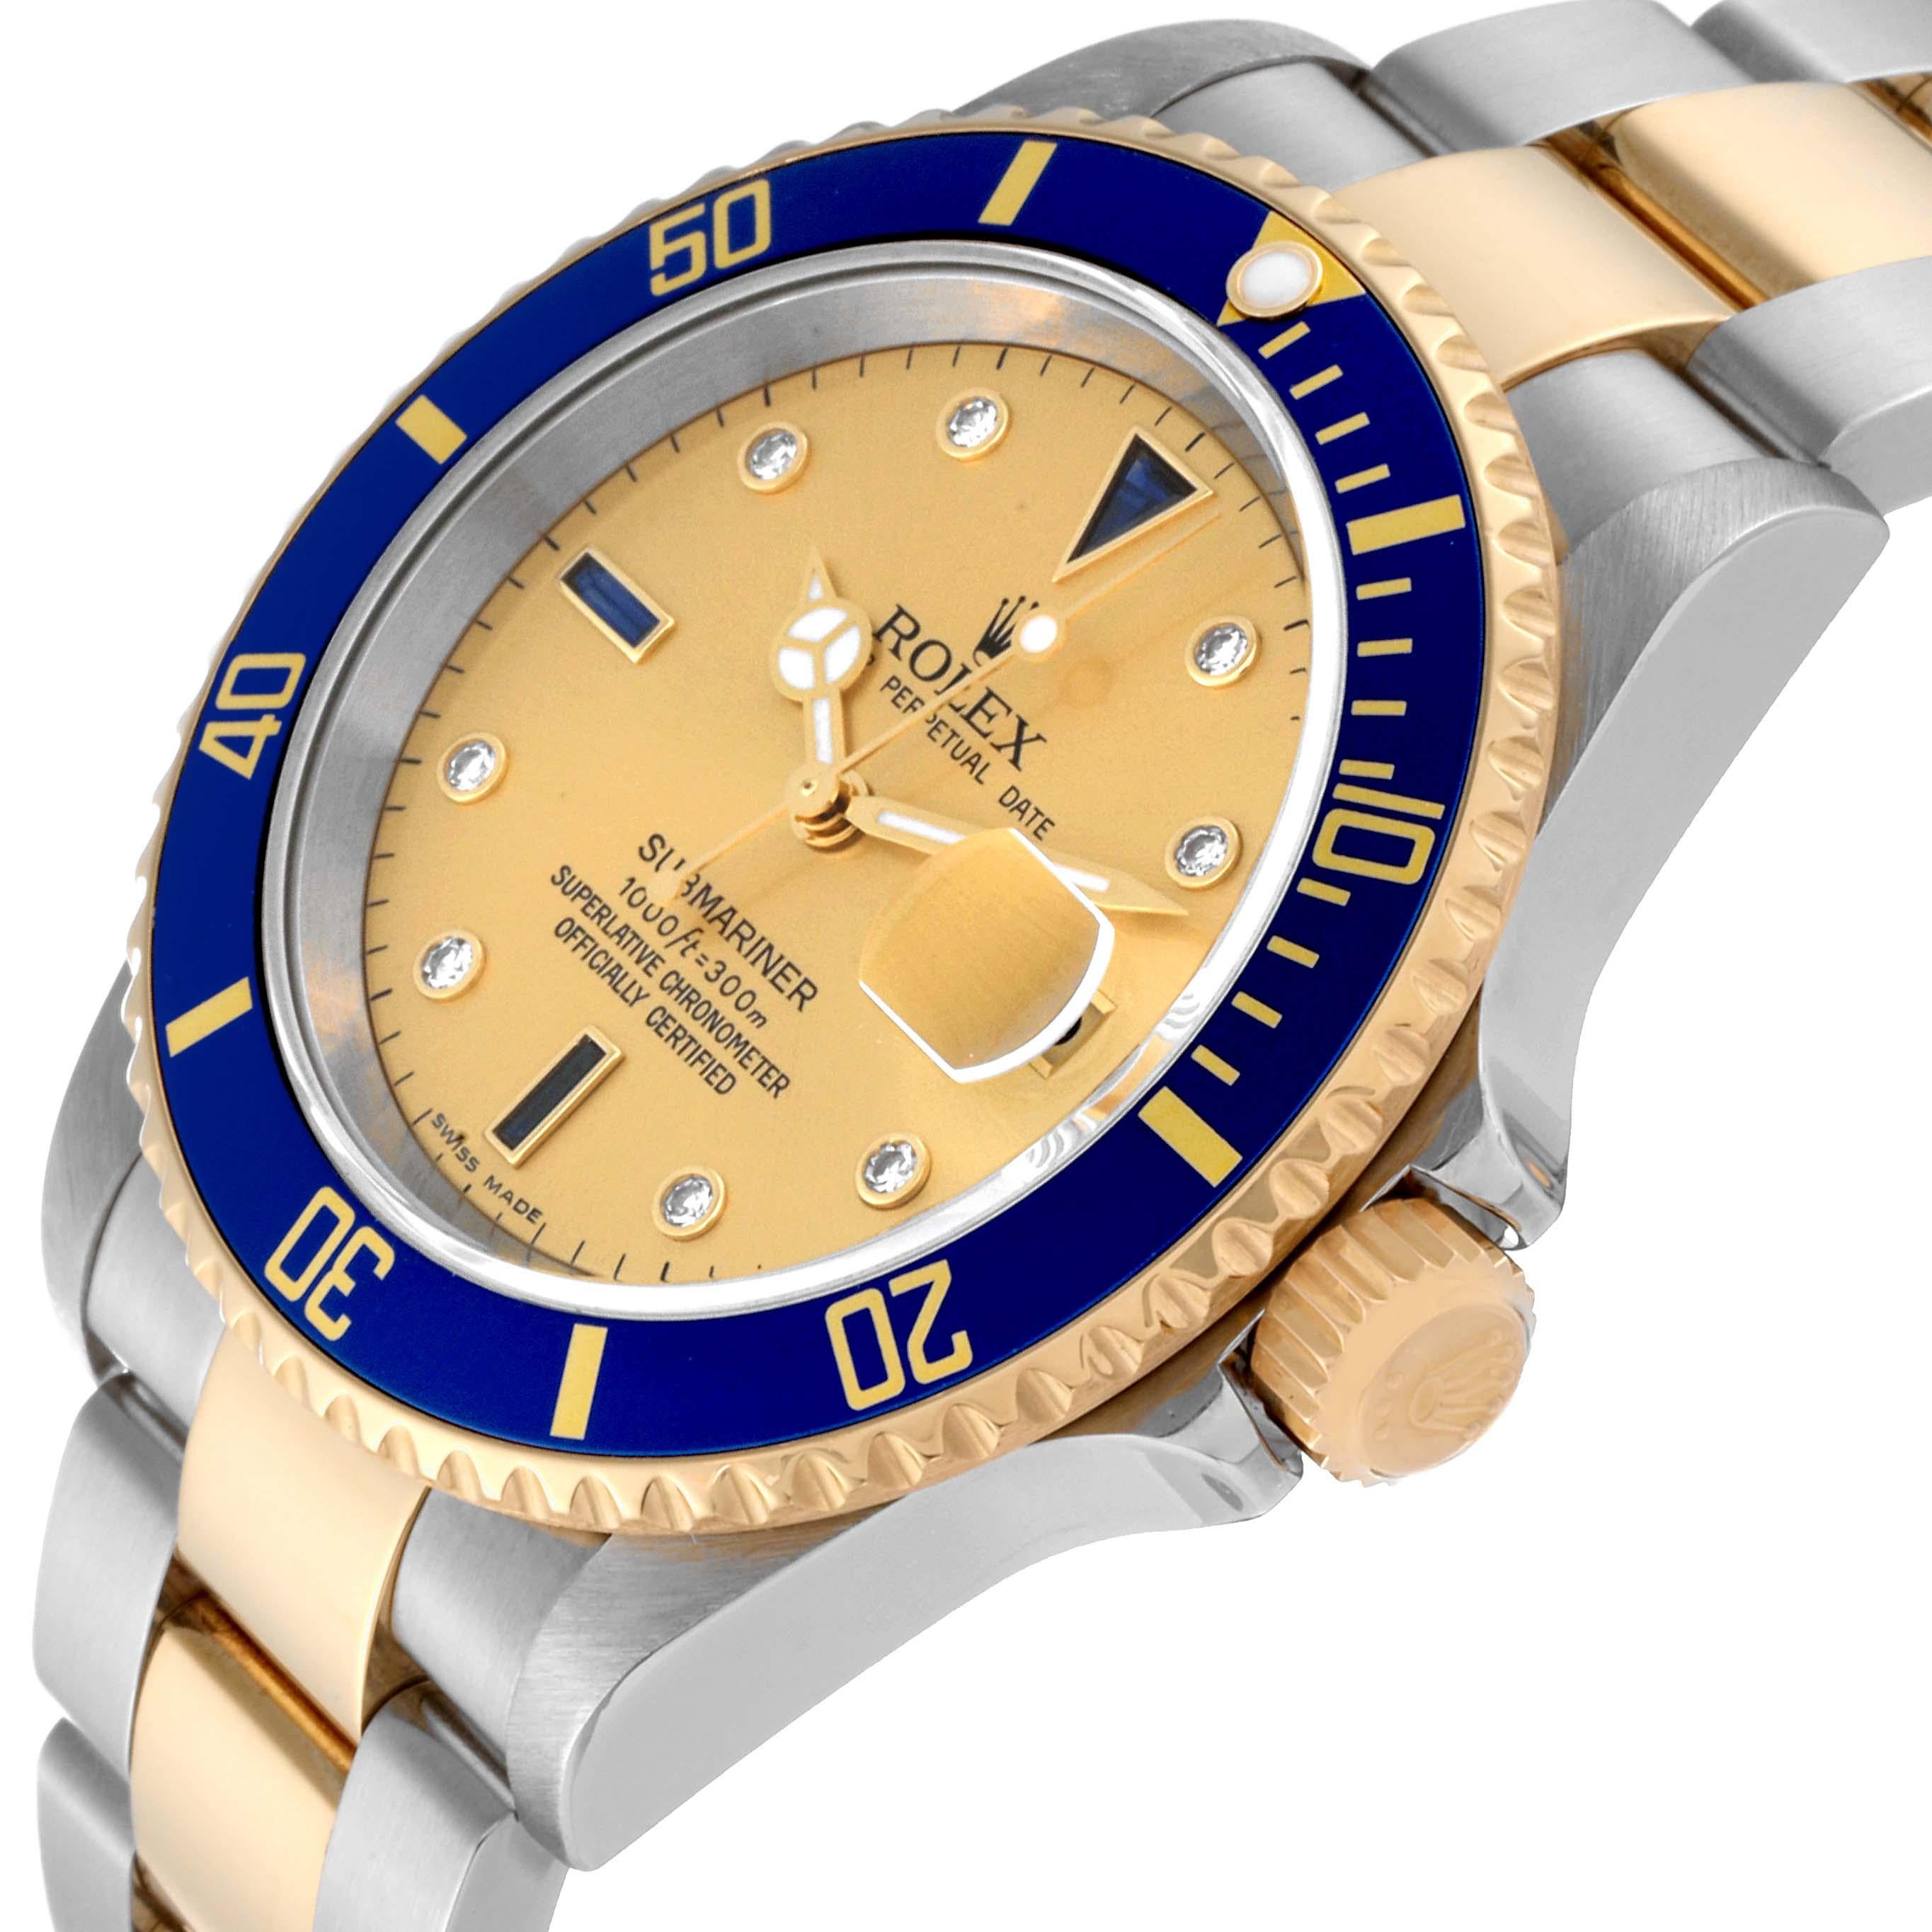 Rolex Submariner Steel Yellow Gold Diamond Serti Dial Mens Watch 16613 Box Card. Mouvement automatique à remontage automatique, officiellement certifié chronomètre. Boîtier en acier inoxydable et or jaune 18k de 40 mm de diamètre. Logo Rolex sur la